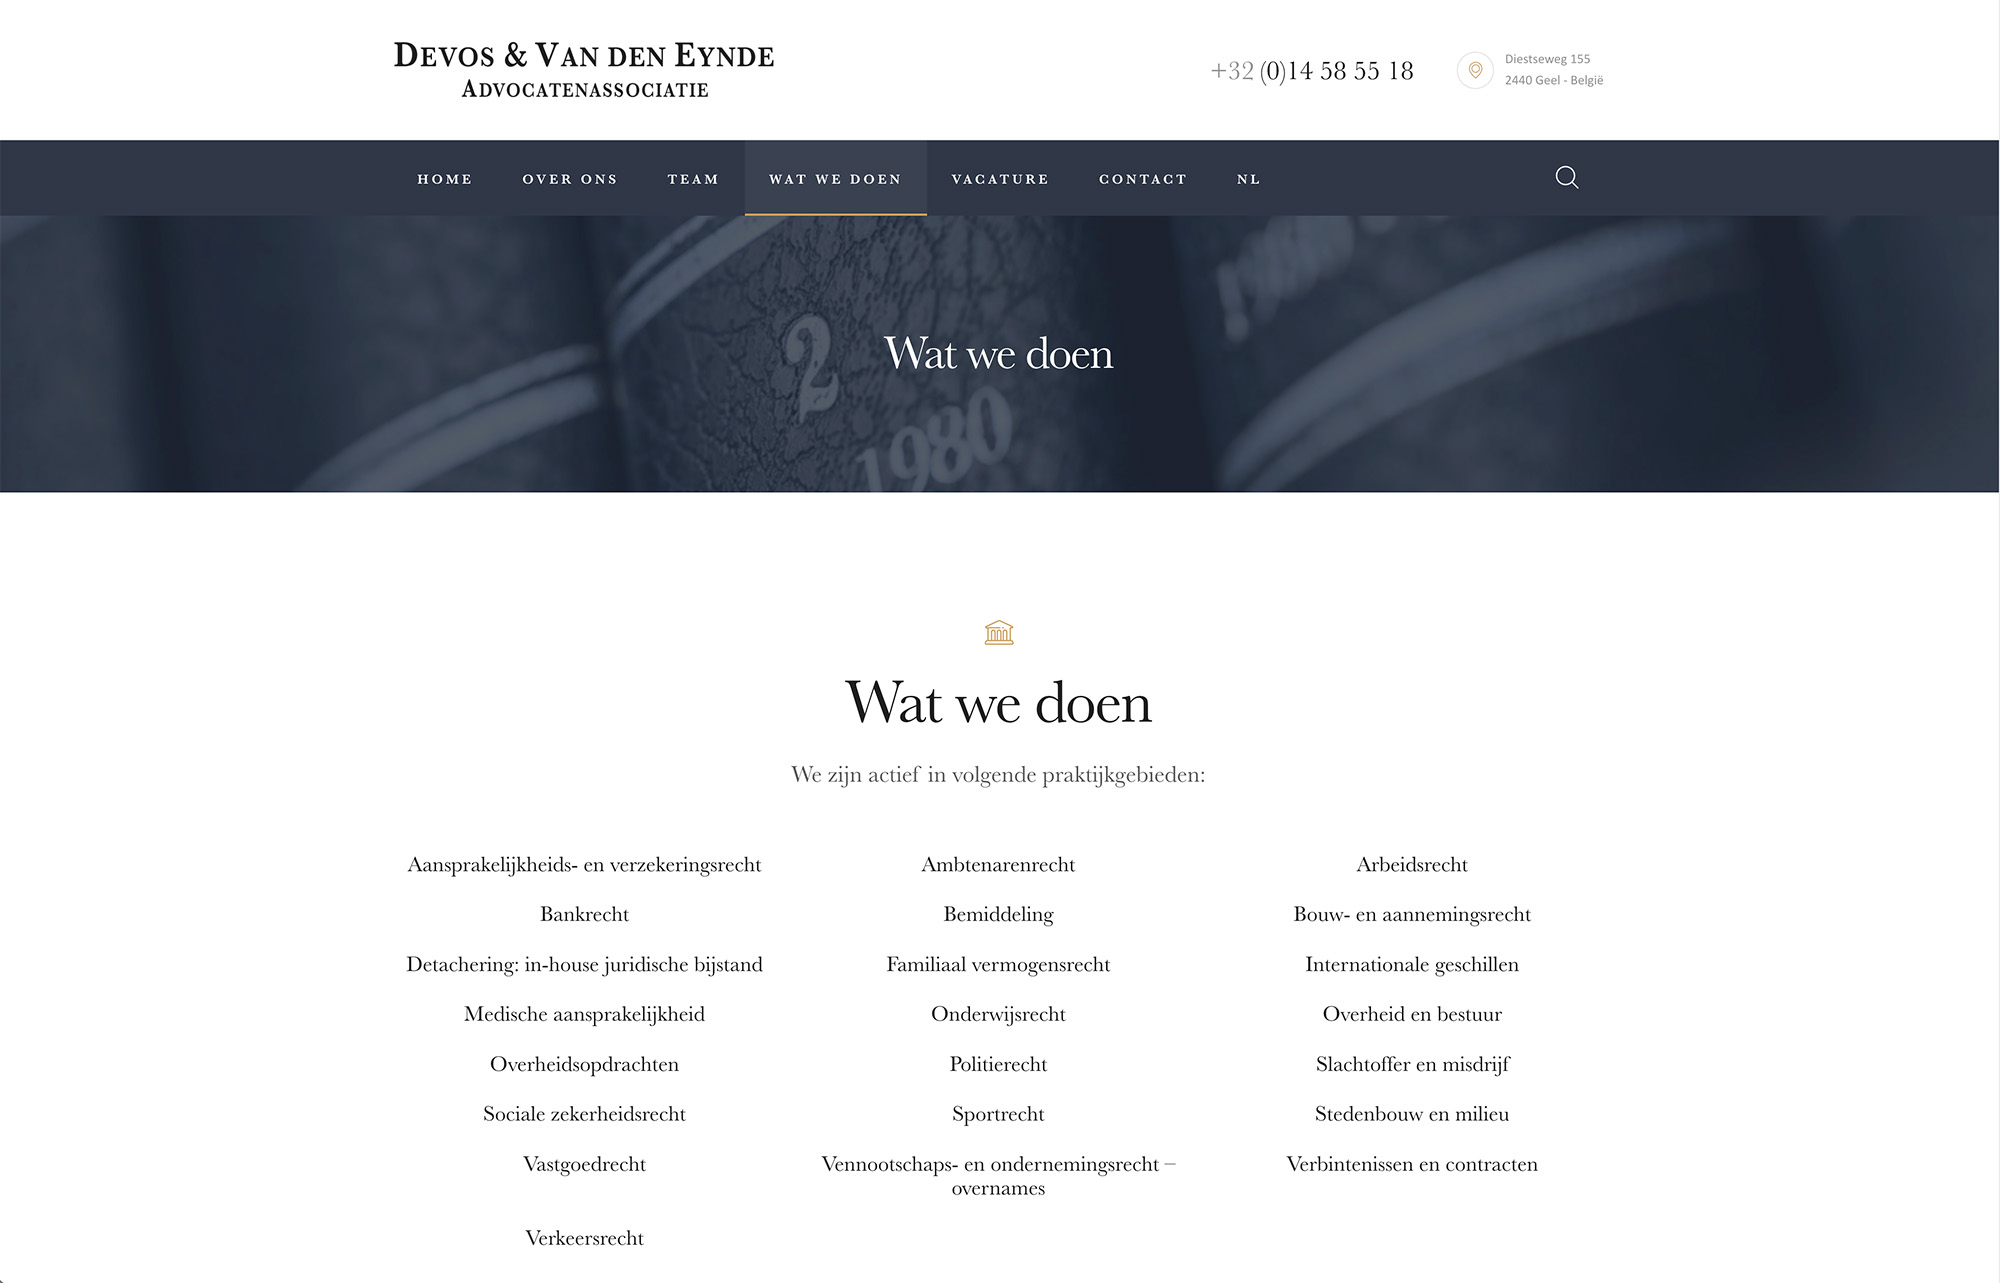 Screenshots van de website van advocatenkantoor Devos & van den Eynde